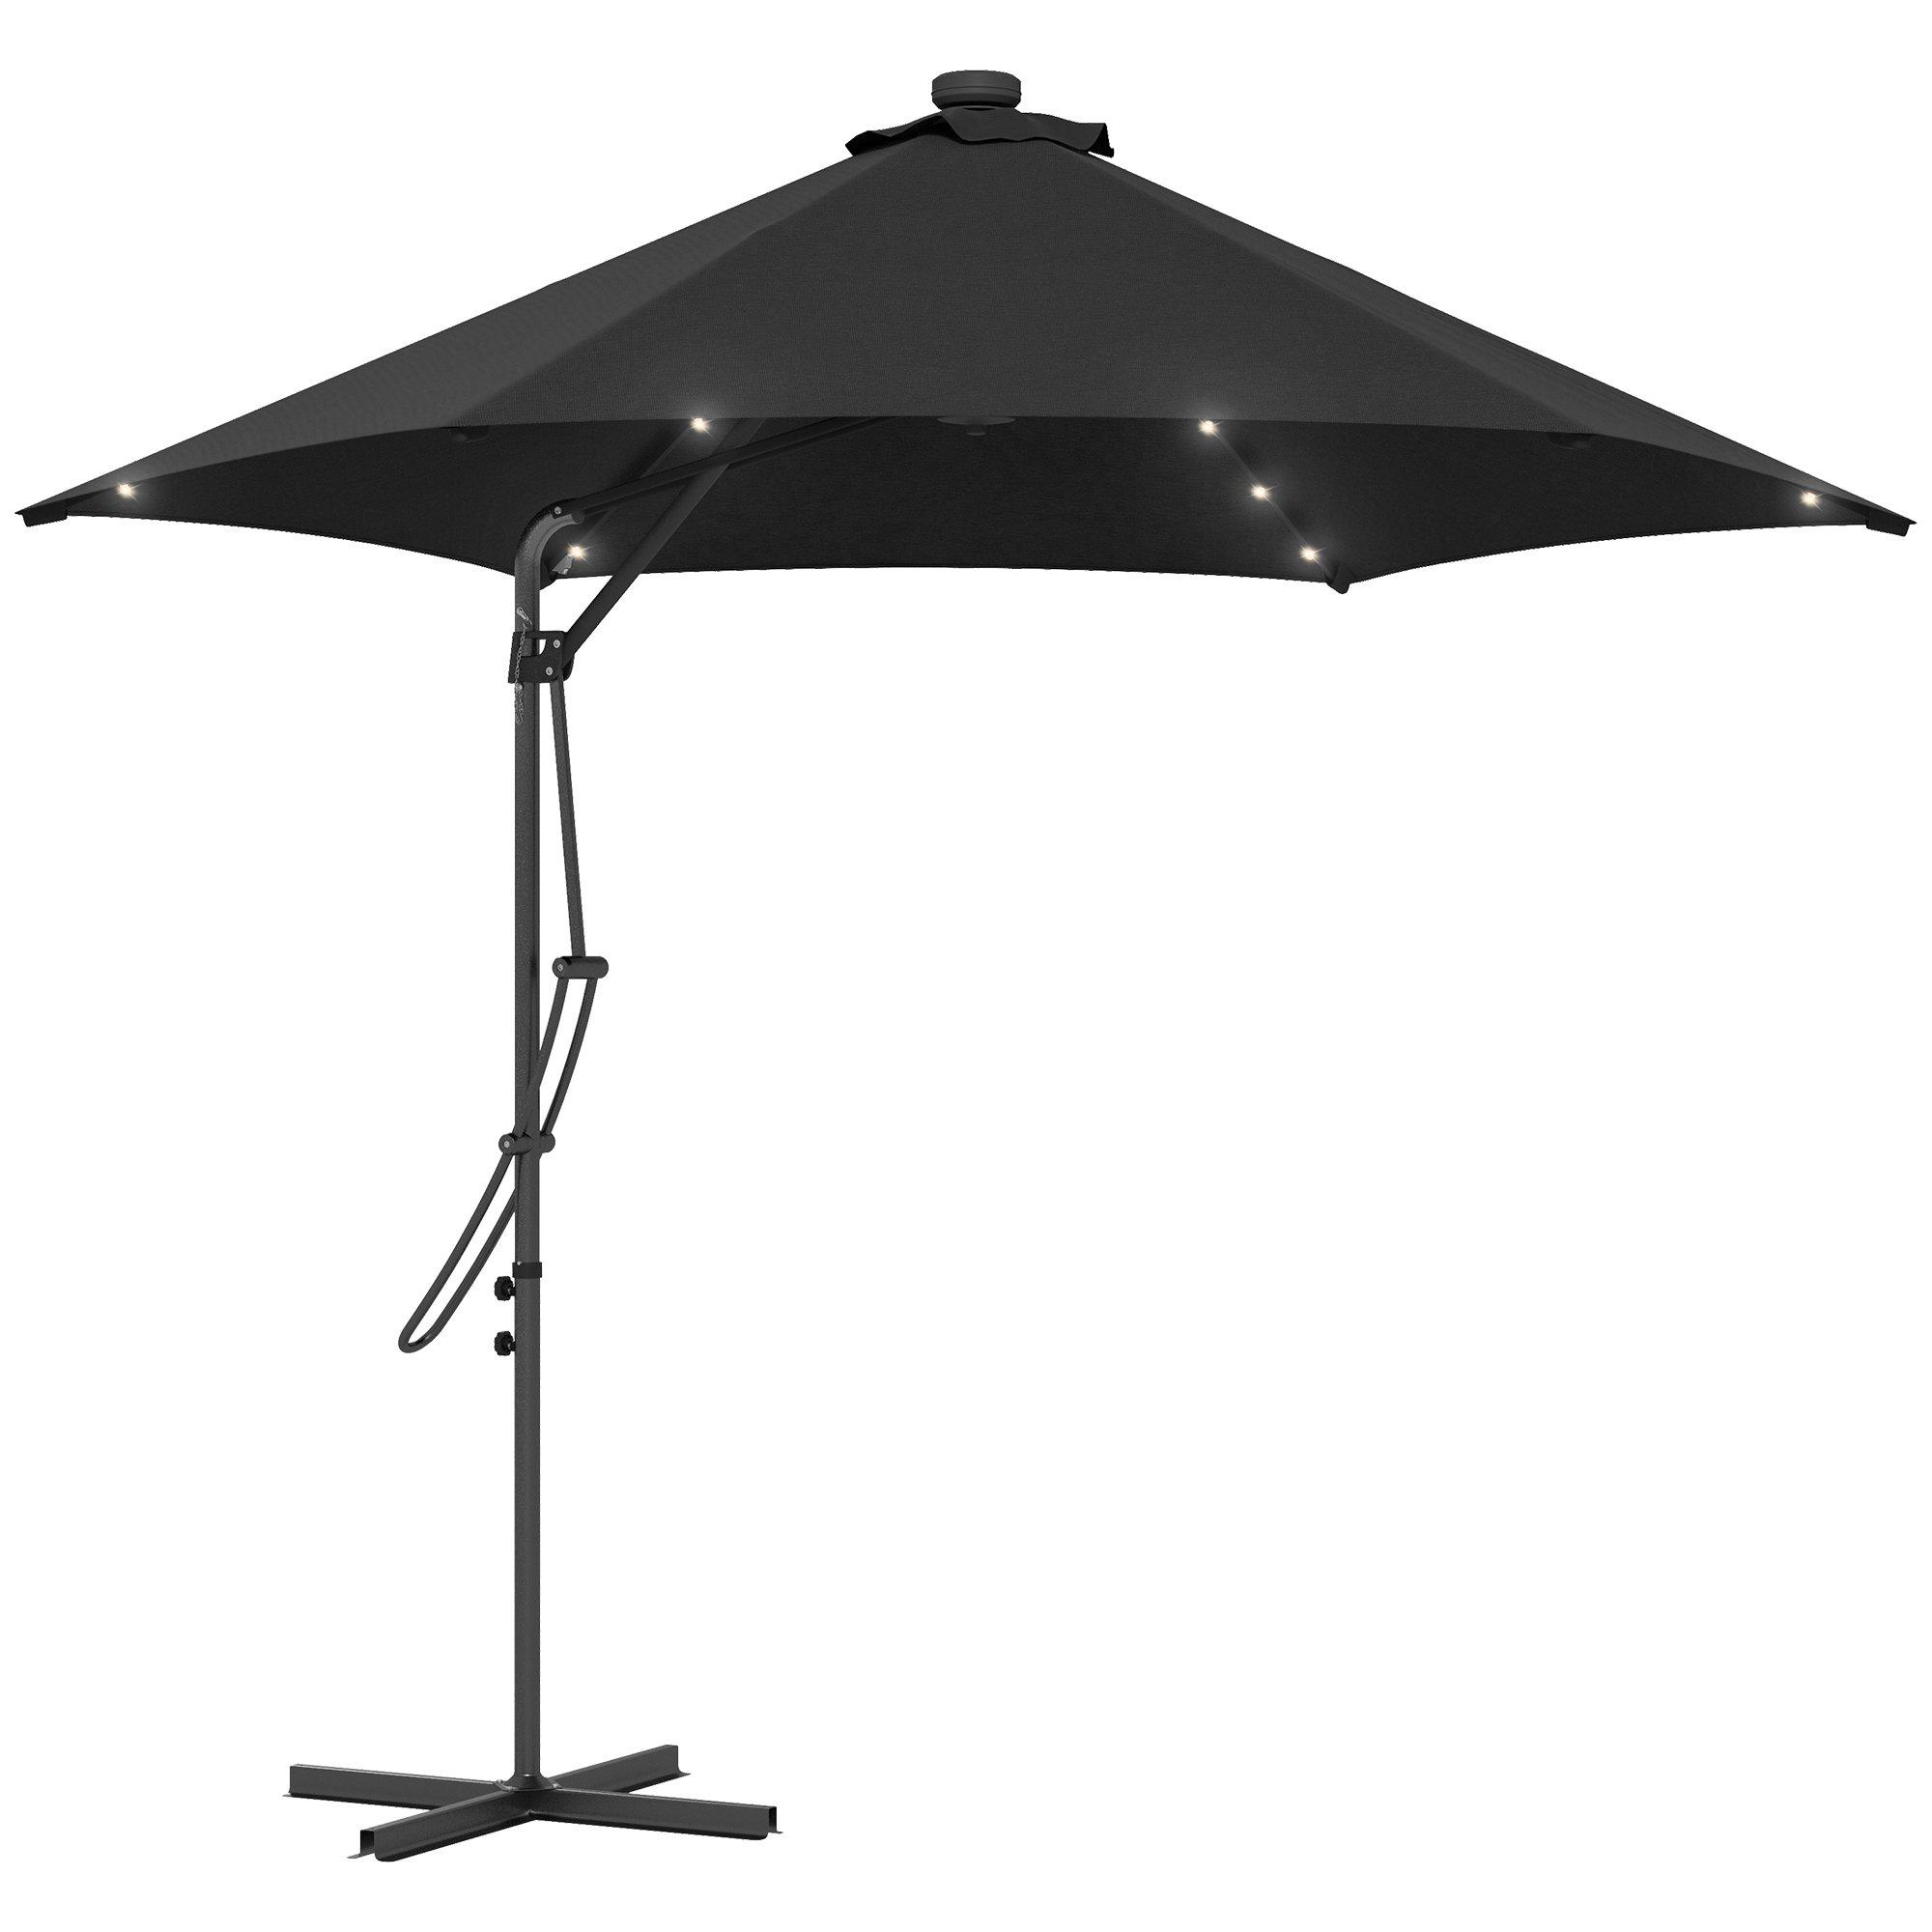 3(m) Cantilever Garden Parasol Umbrella W/ Solar LED and Cover